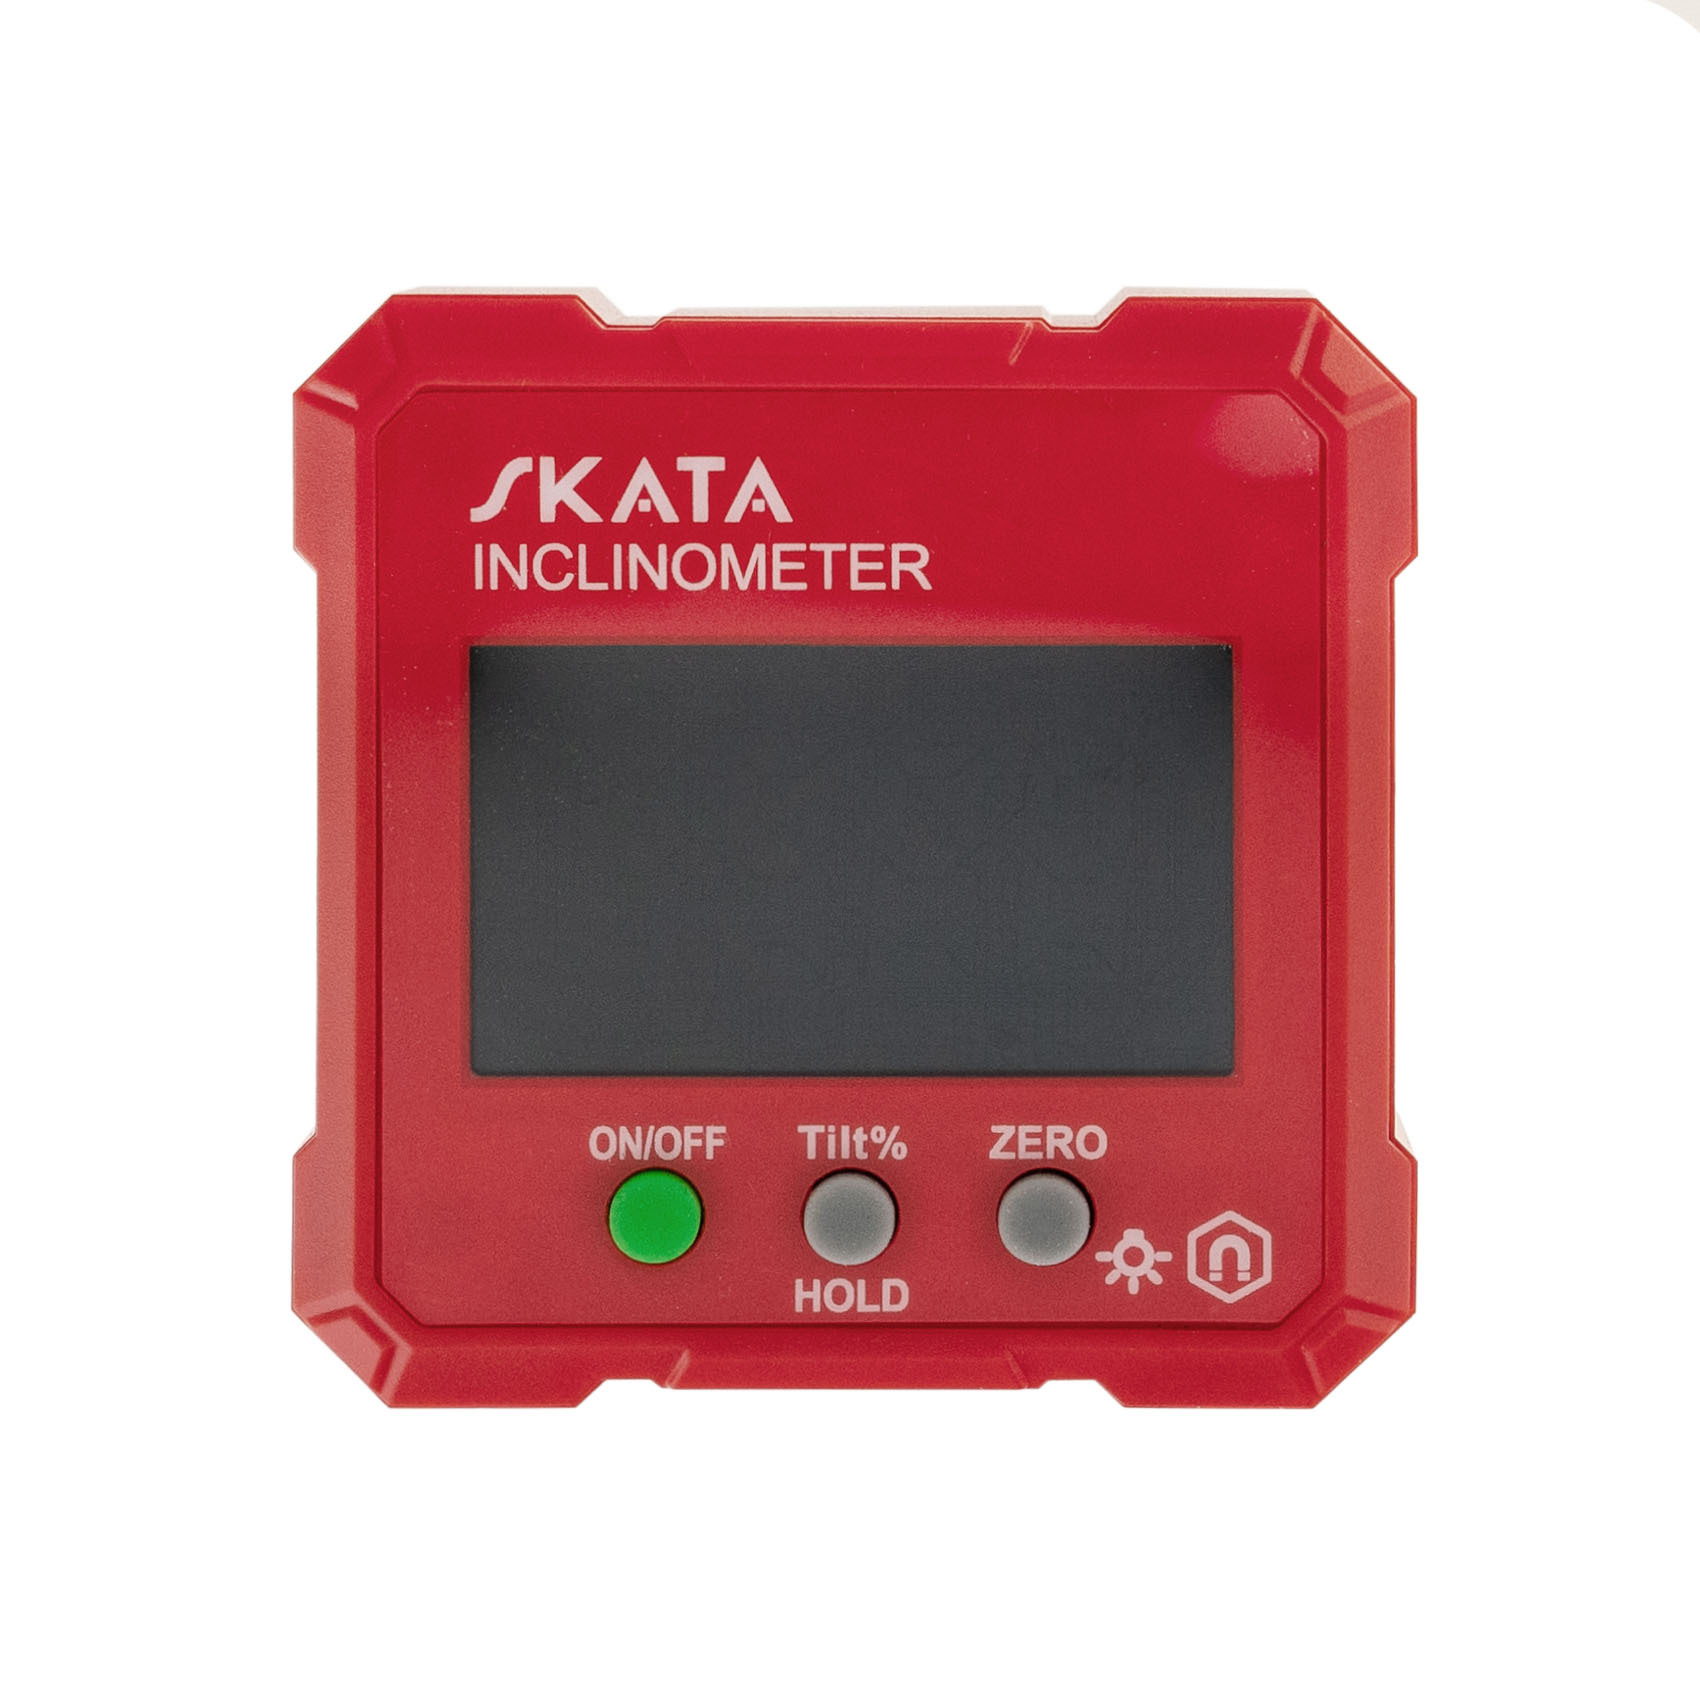 Угломер электронный с магнитным основанием, SKATA Inclinometer - фото 2